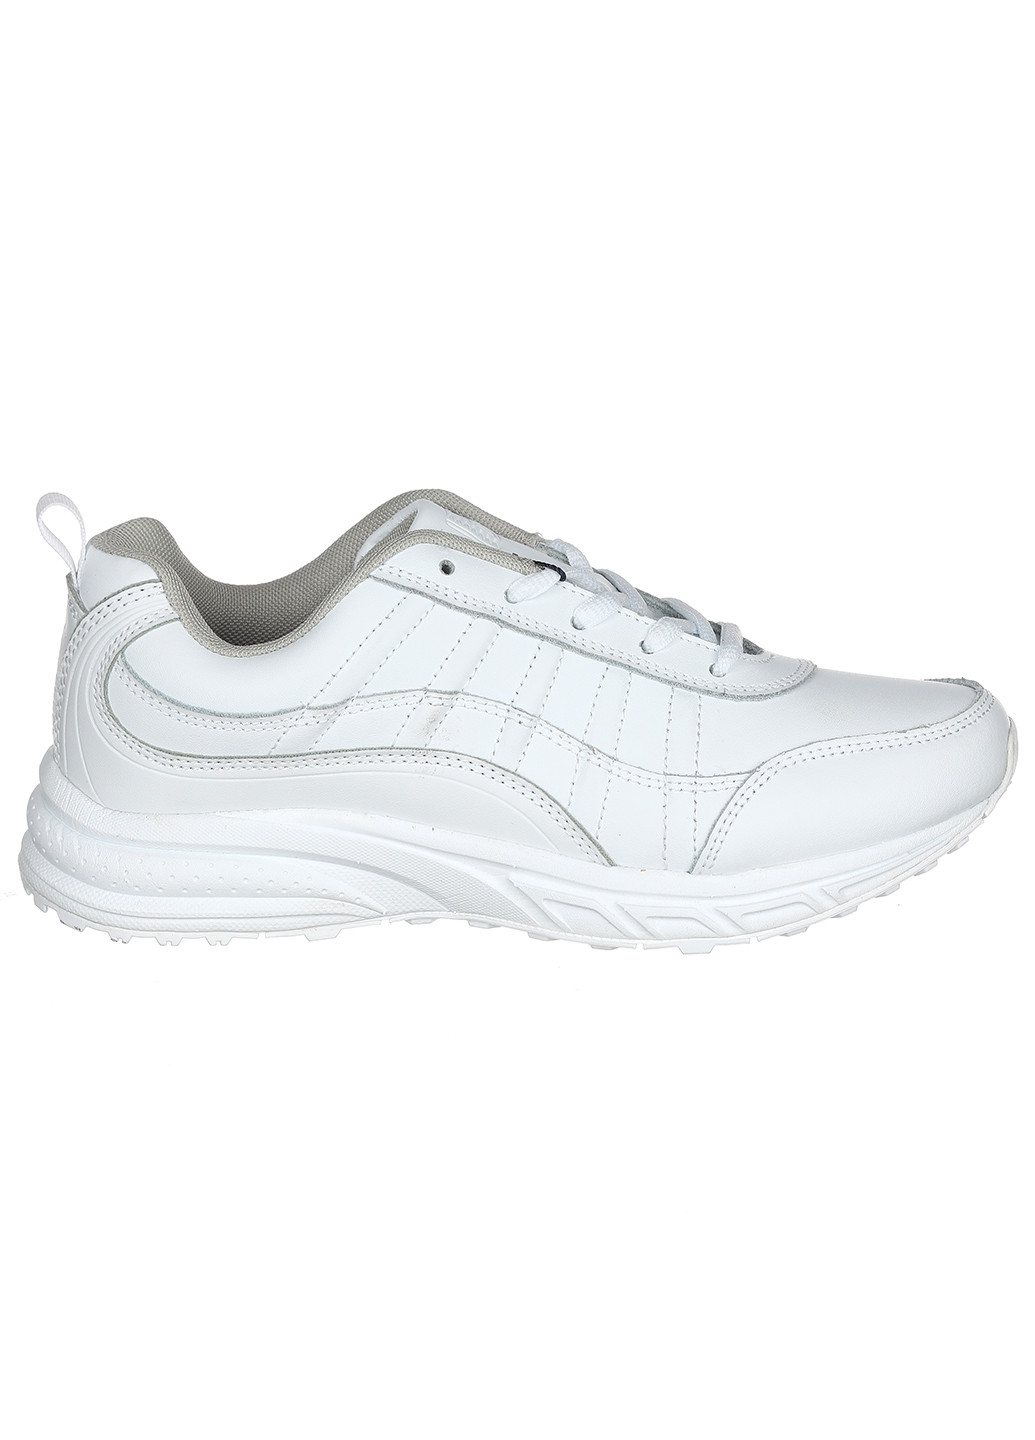 Білі осінні жіночі шкіряні кросівки 739a-2 Bona